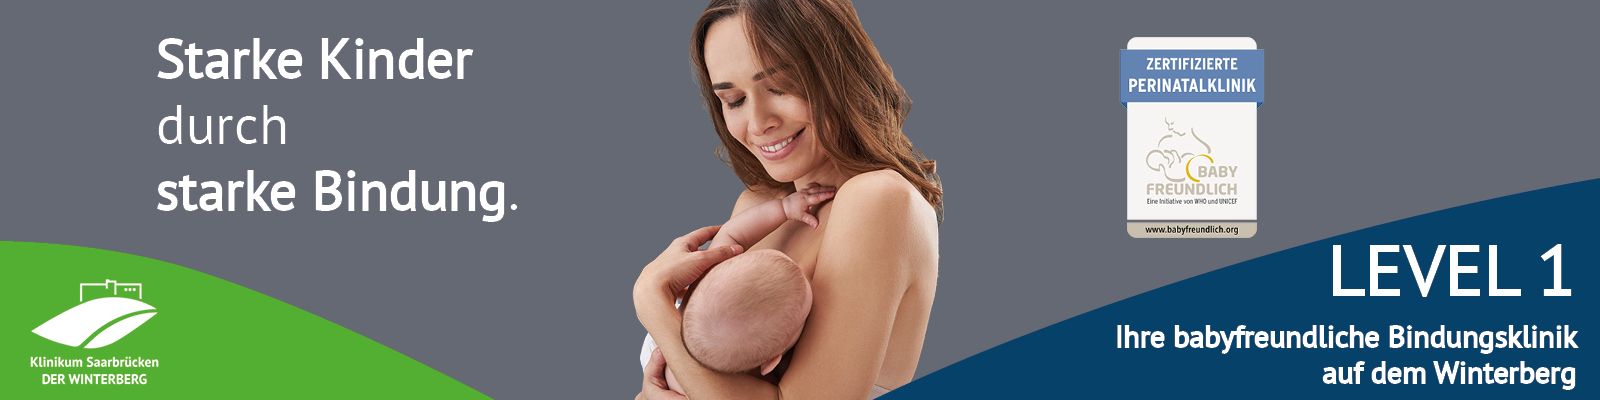 Mutter mit Baby: Klinikum Saarbrücken – LEVEL 1 – Deine babyfreundliche Bindungsklinik auf dem Winterberg: Starke Kinder durch starke Bindung. Slider_Level1_starkeBindung.jpg